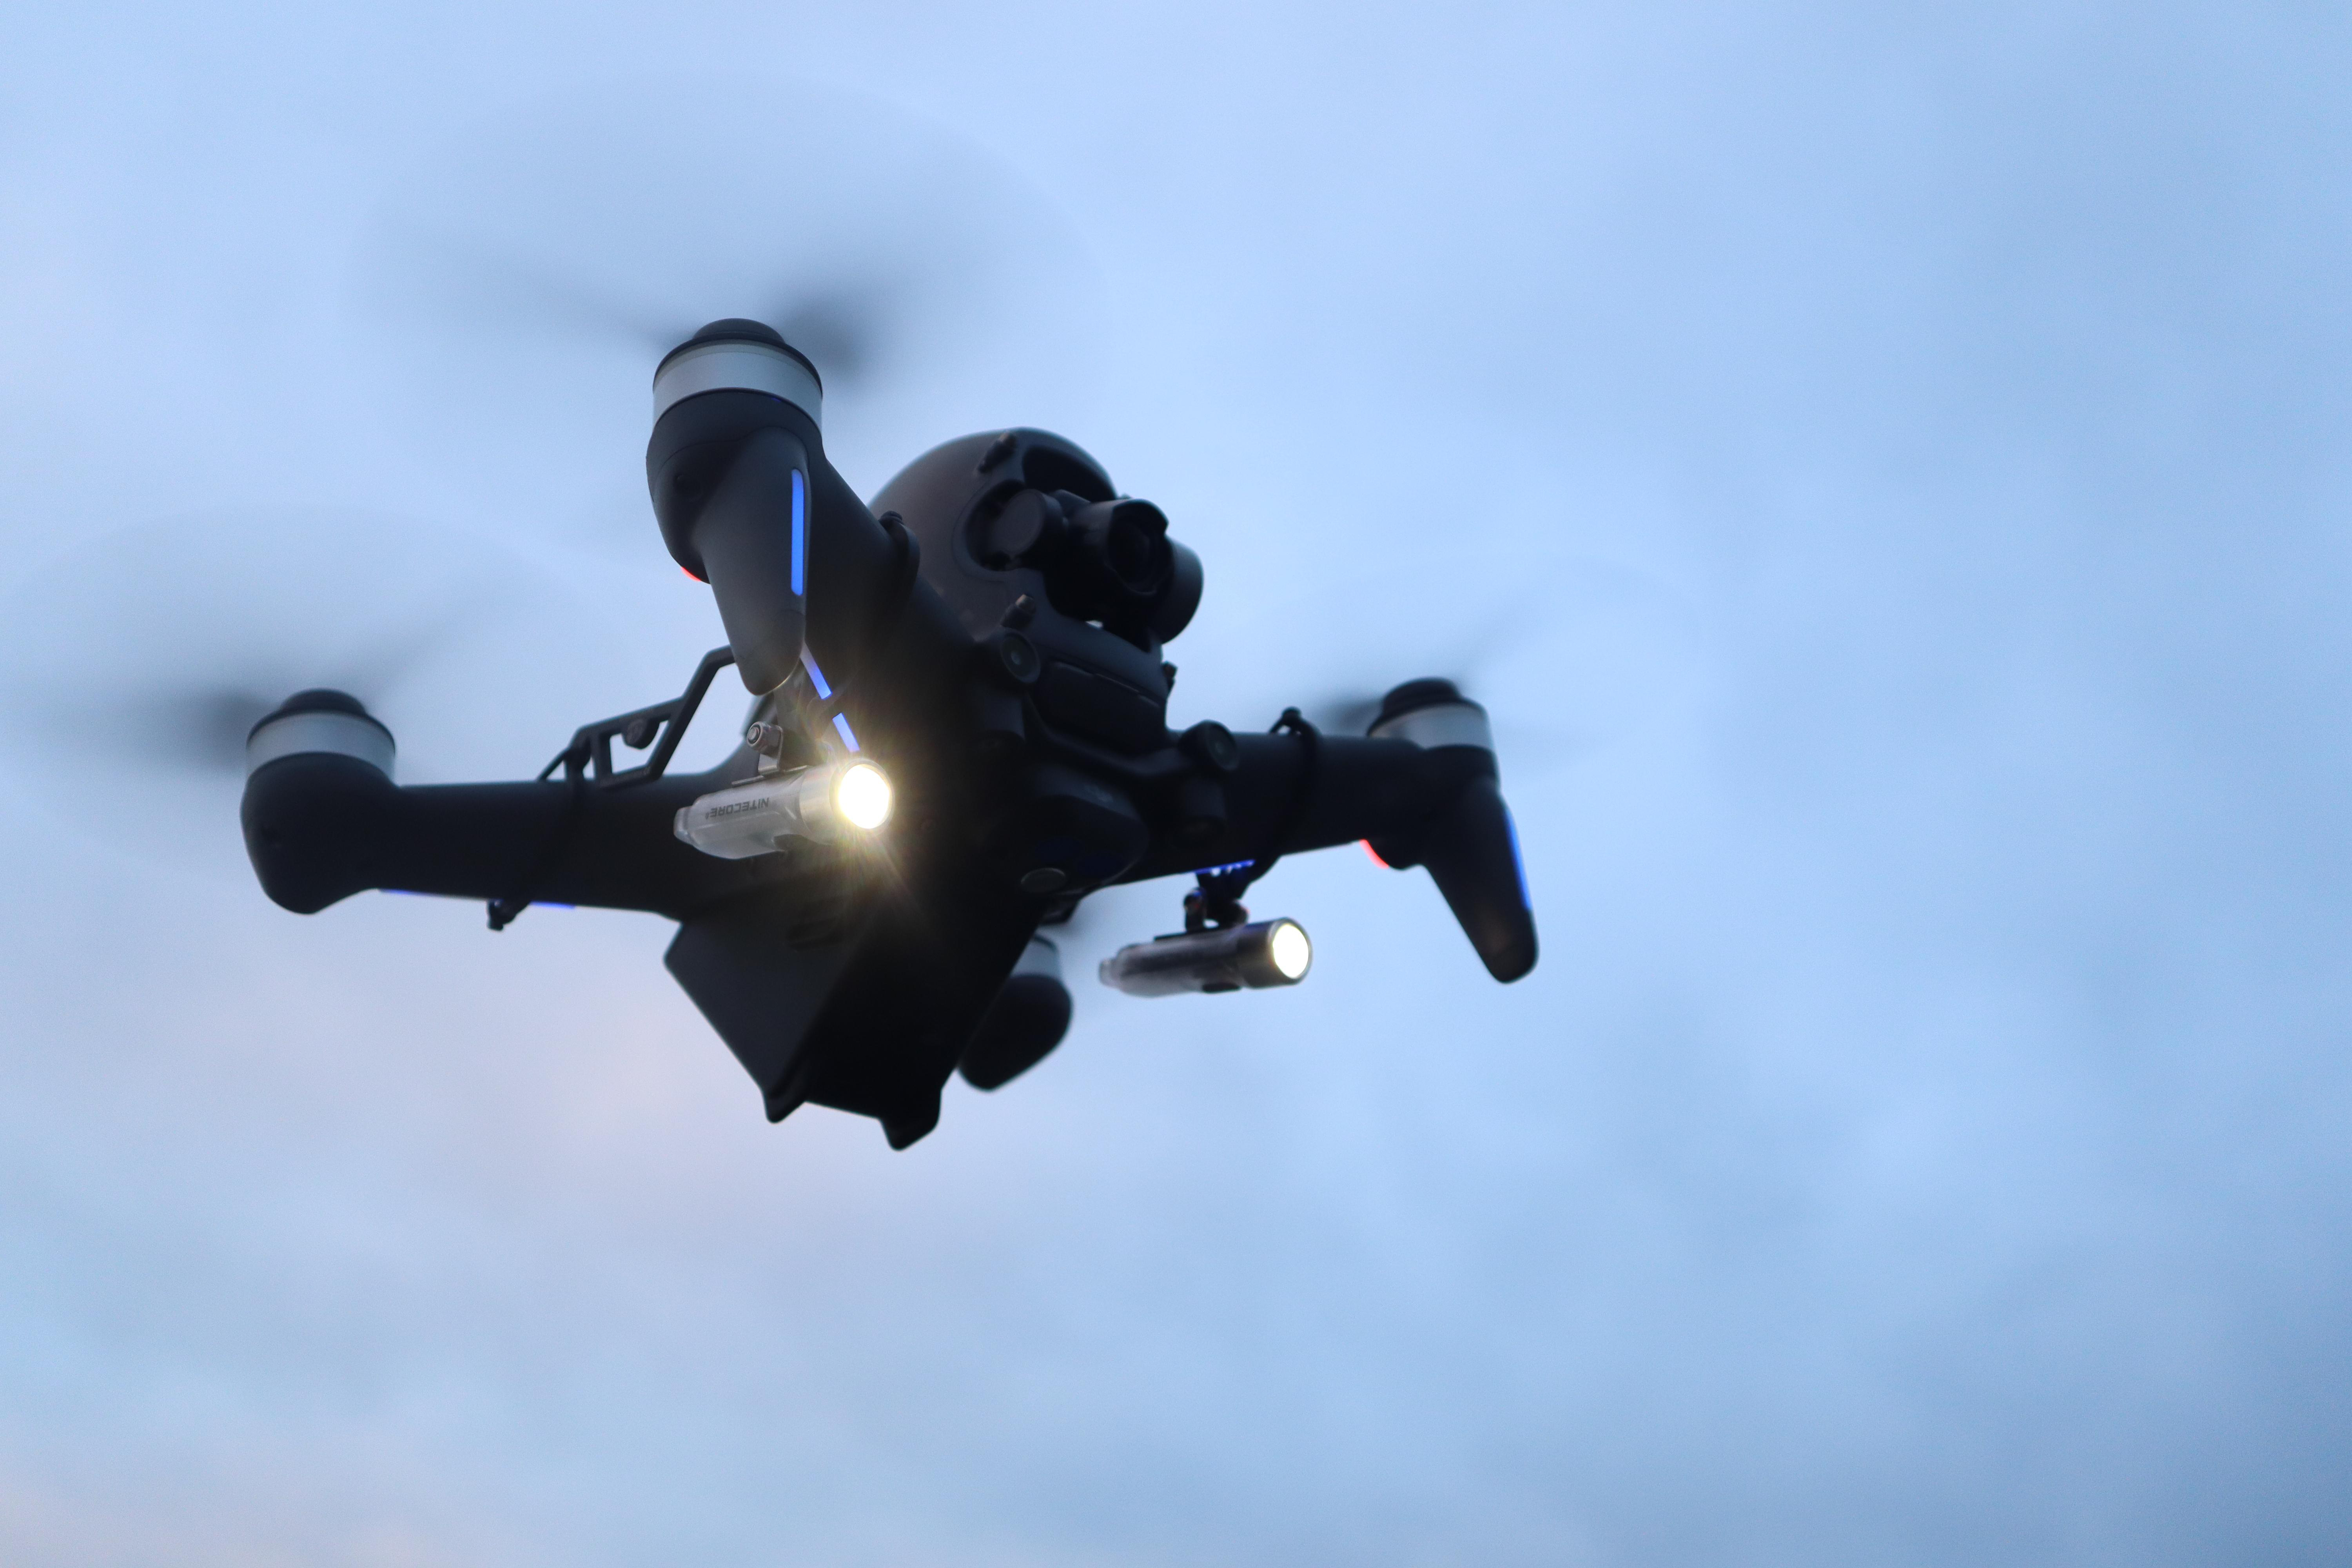 ROBOTERWERK Roboterwerk Dual, 300 SELFIE Beleuchtungssystem, Drohnen für DJI Transparent/Schwarz FPV